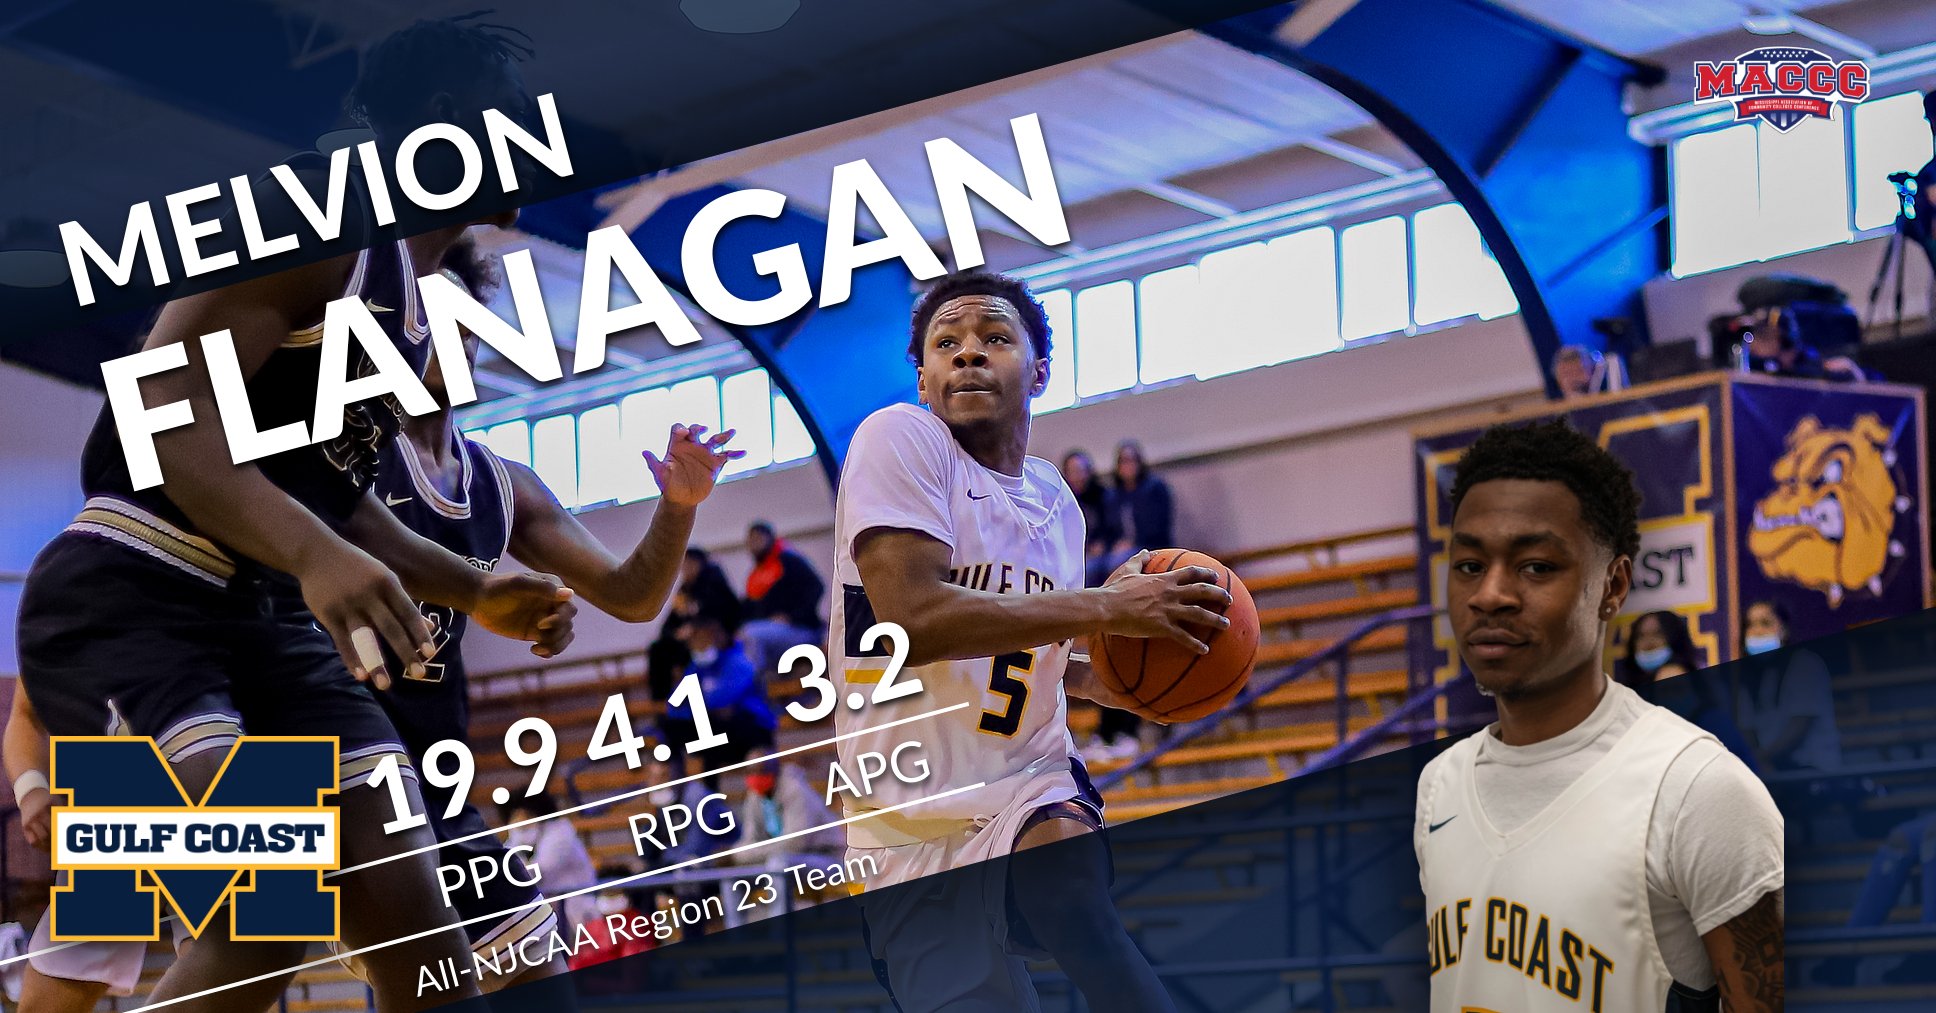 Flanagan named All-Region 23